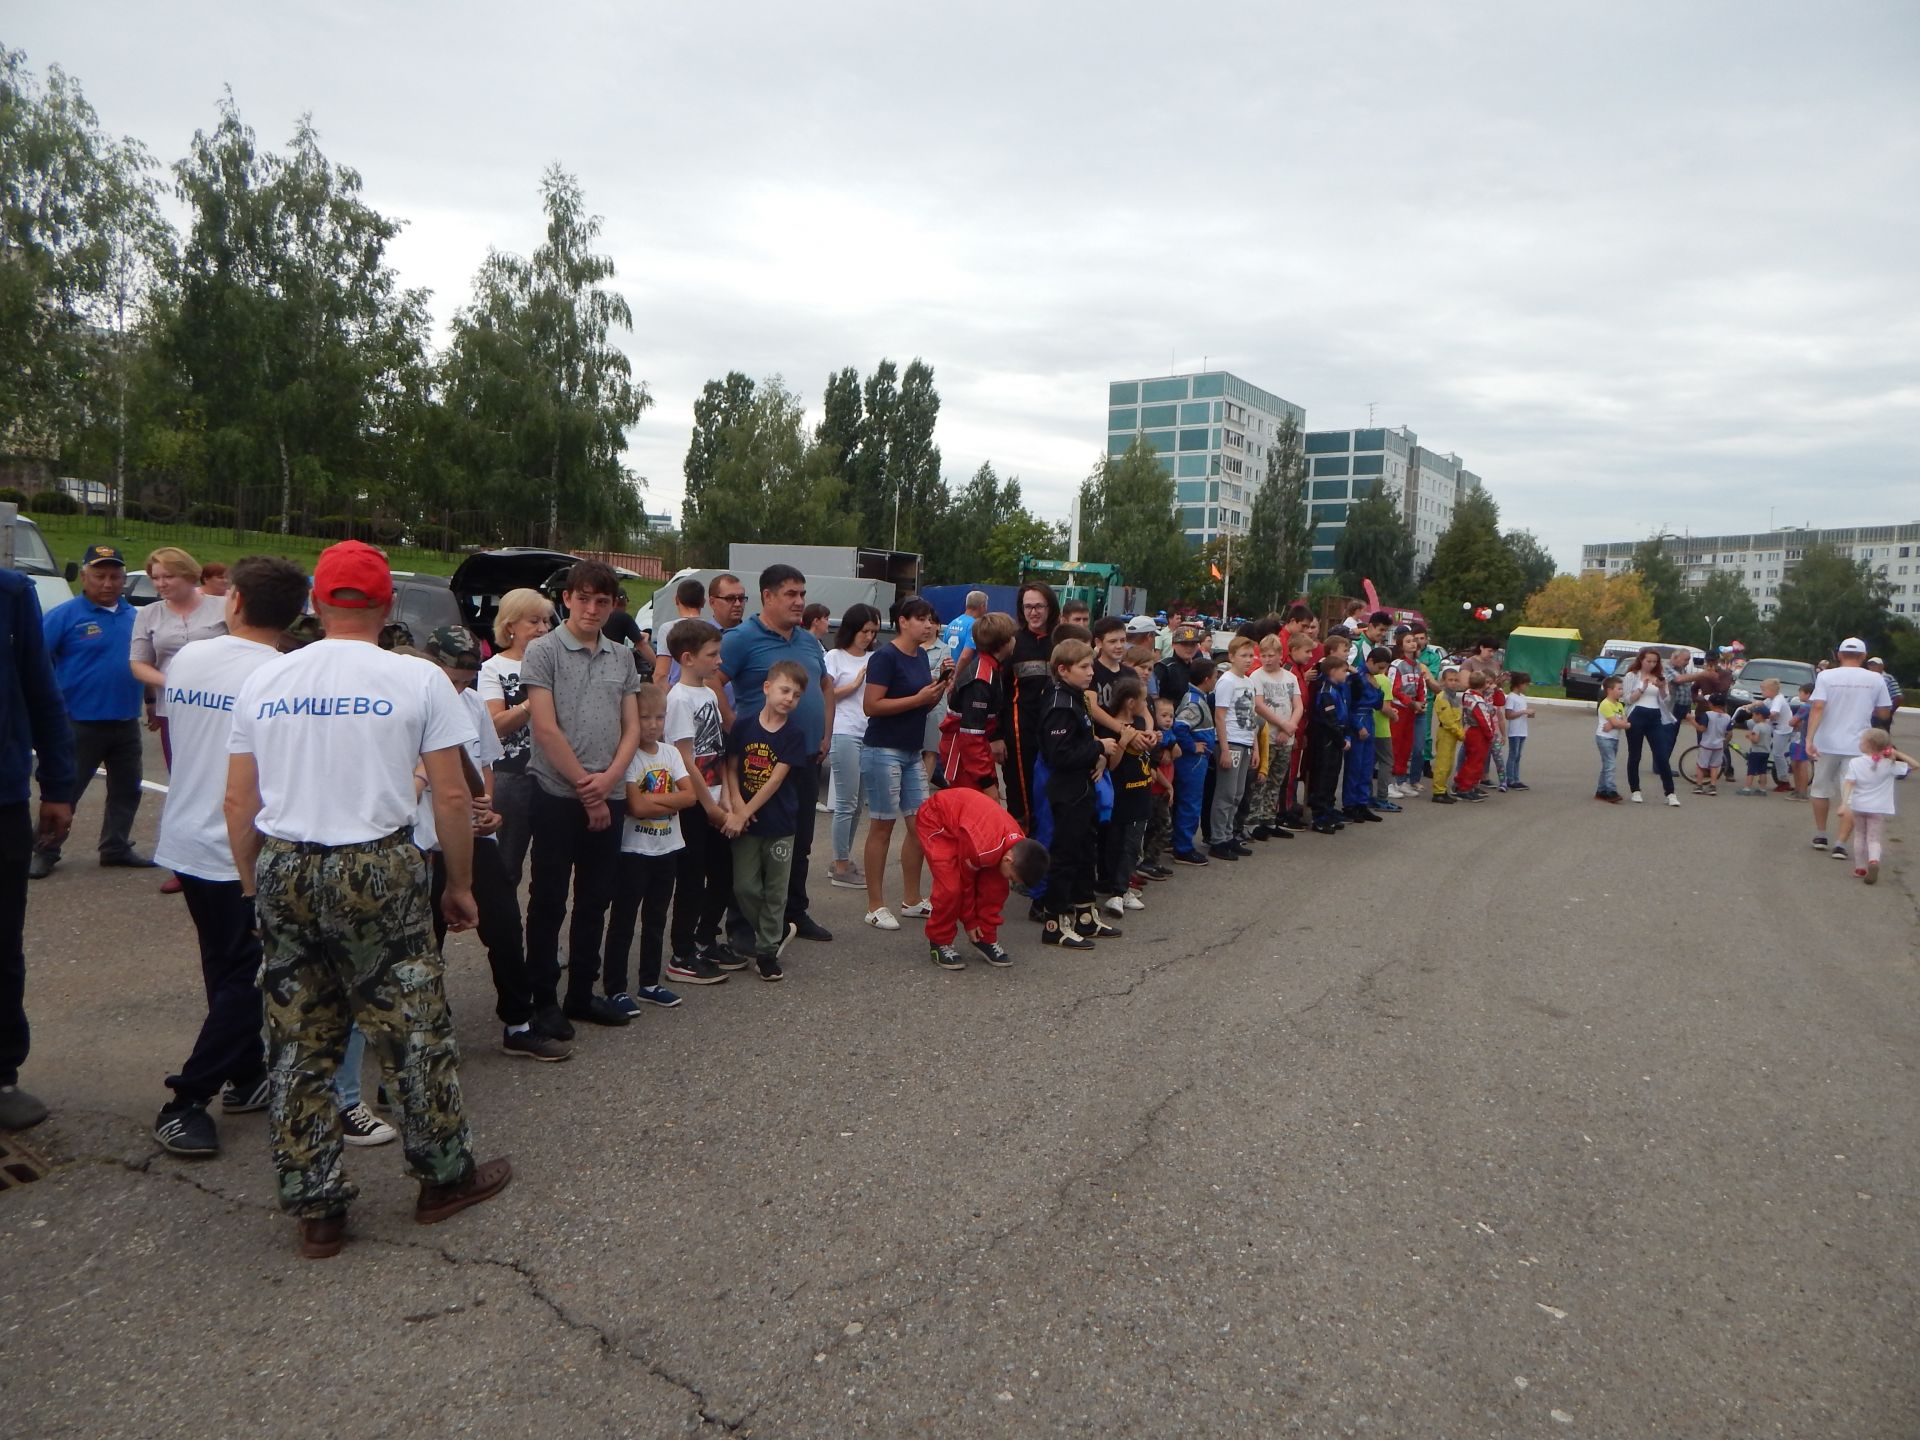 В минувшие выходные в Камских Полянах состоялись Республиканские соревнования по автокроссу среди детей на кубок ТАИФ-НК по картингу, приуроченные 37-летию Камских Полян